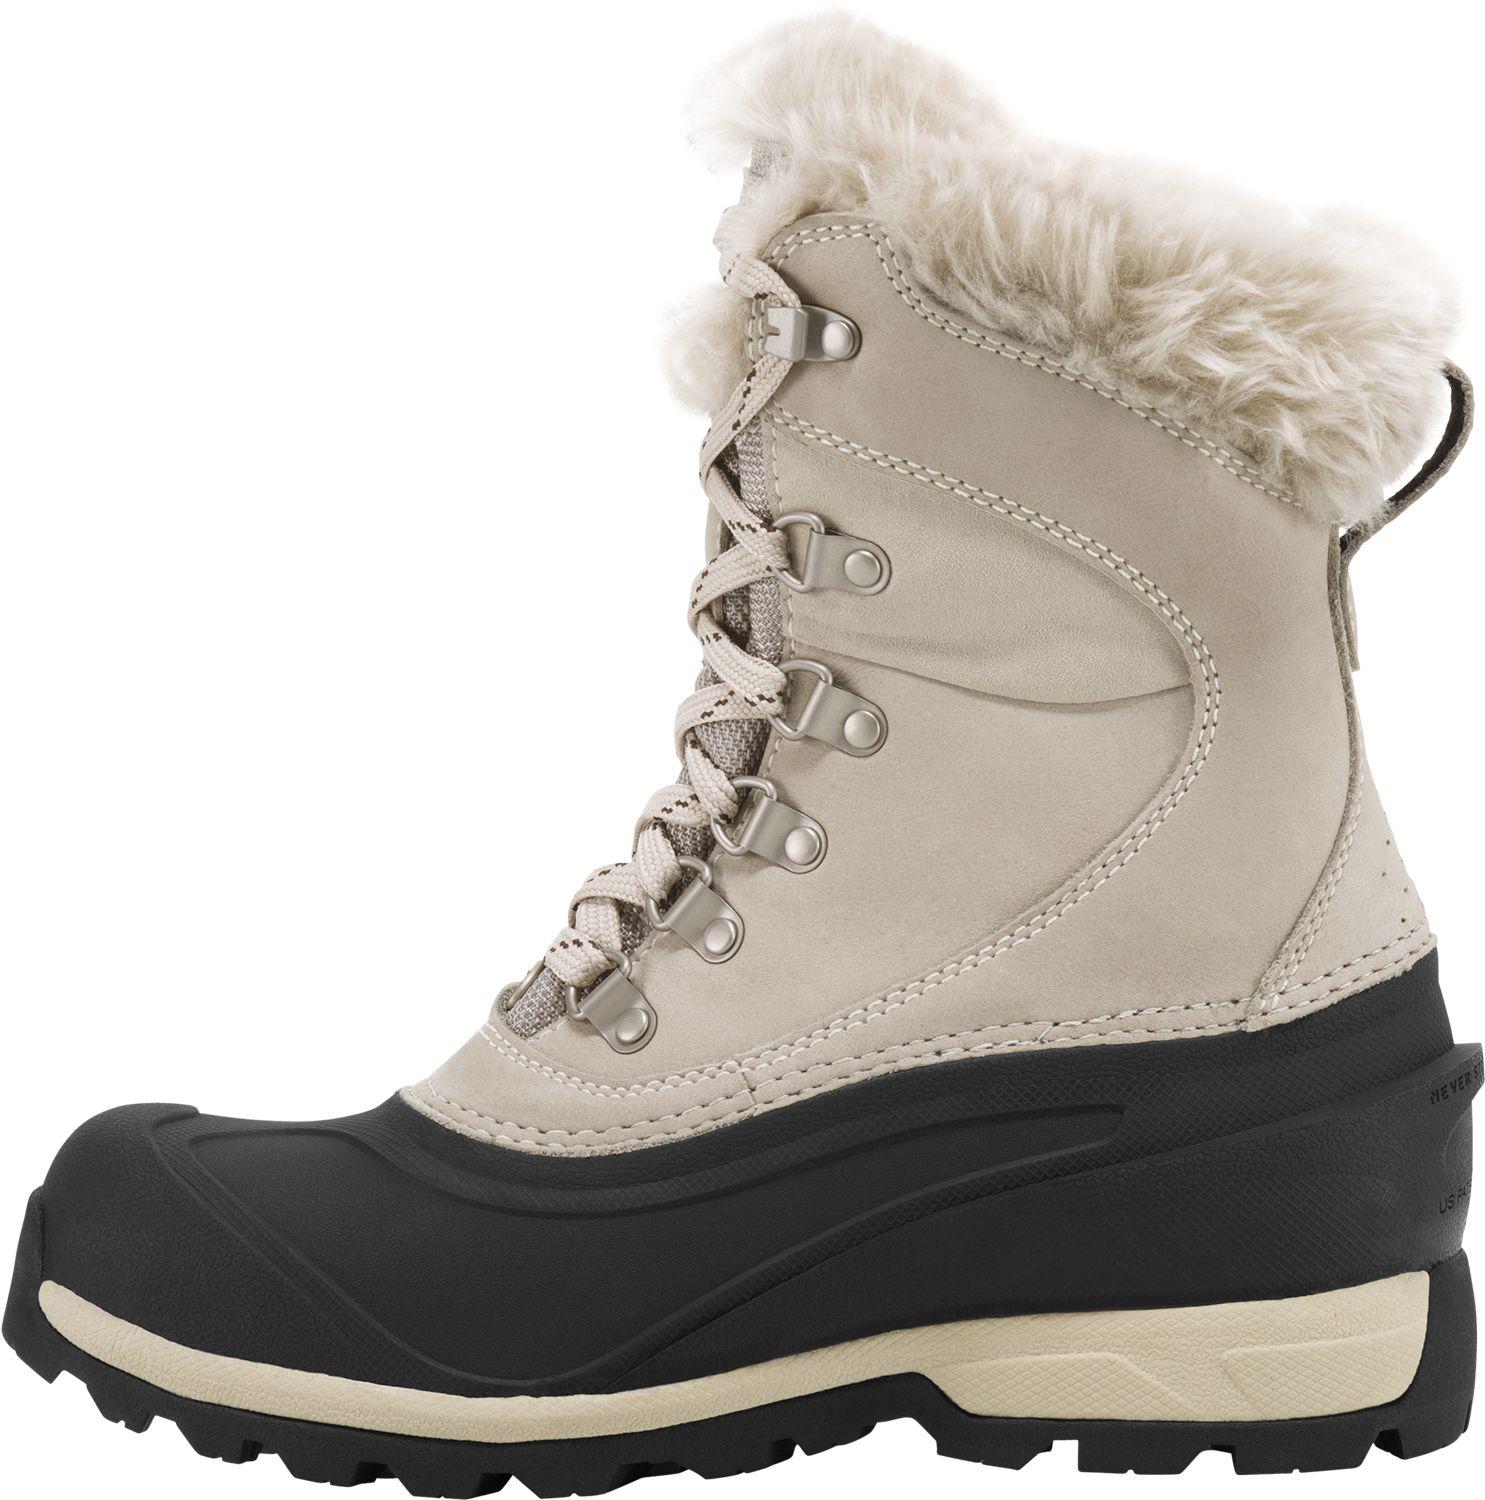 chilkat 400g waterproof winter boots 